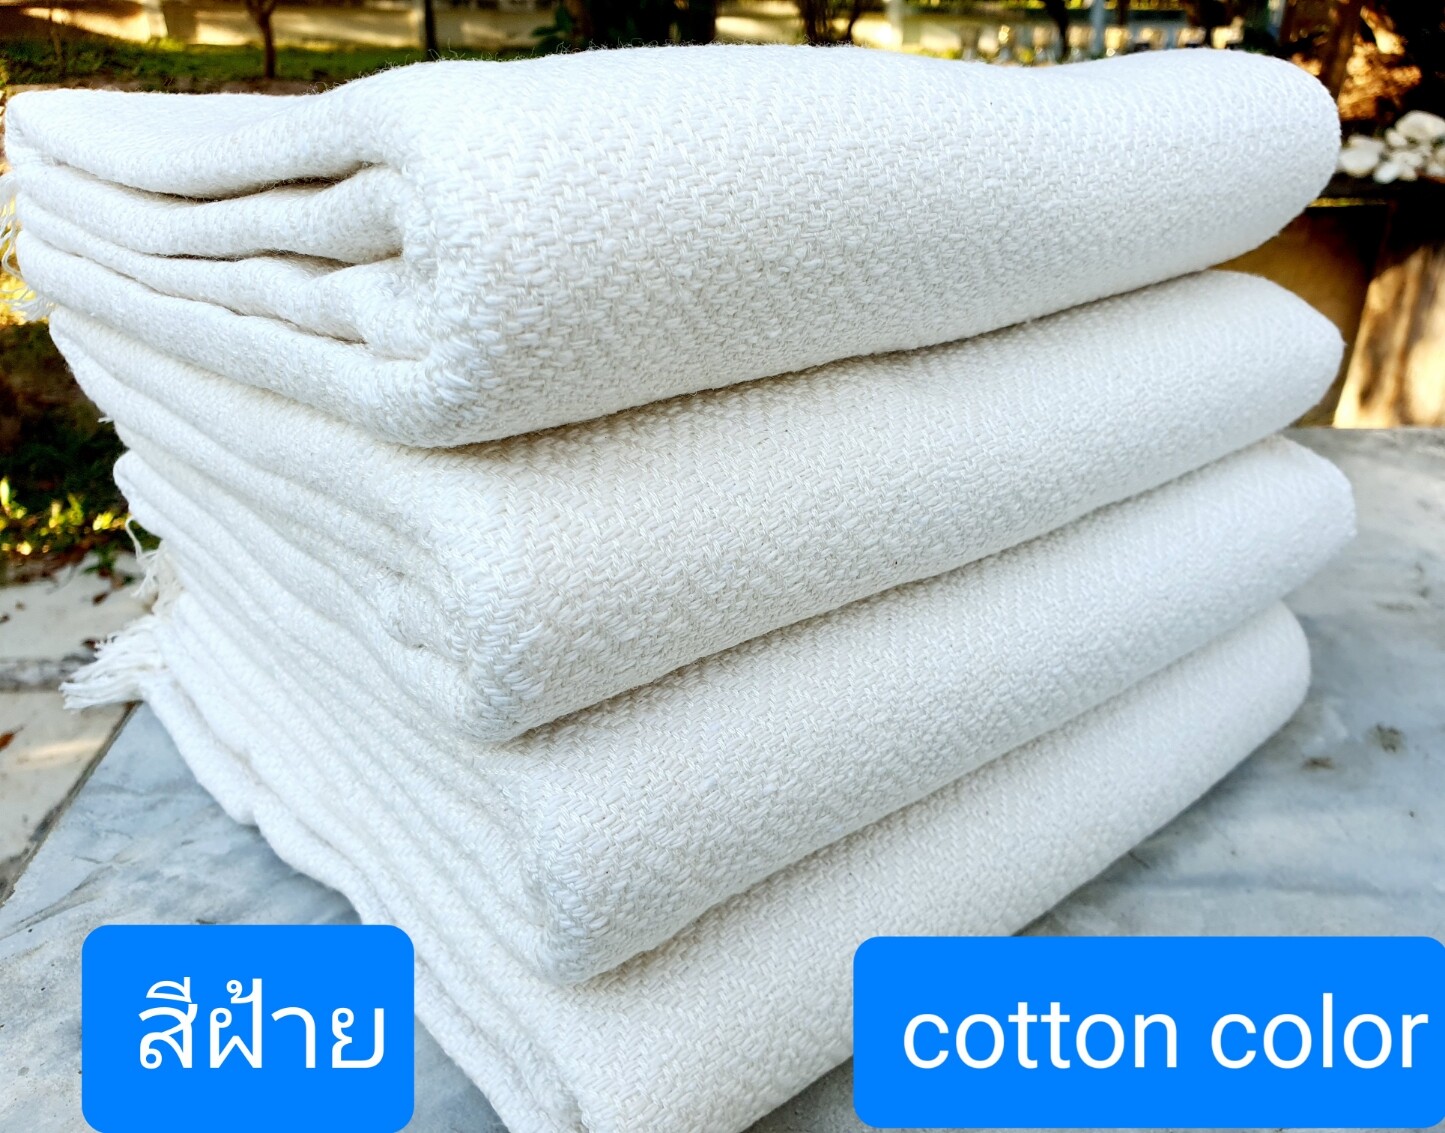 blanket  ka  not towel   105*210cm   สีขาวนวล  cotton  color    ผ้าห่มสีขาว   ผ้าฝ้ายสีขาว    ผ้าฝ้ายทอมือ   ผ้าห่ม  ผ้าห่มผ้าฝ้าย  Hand woven cotton blanket